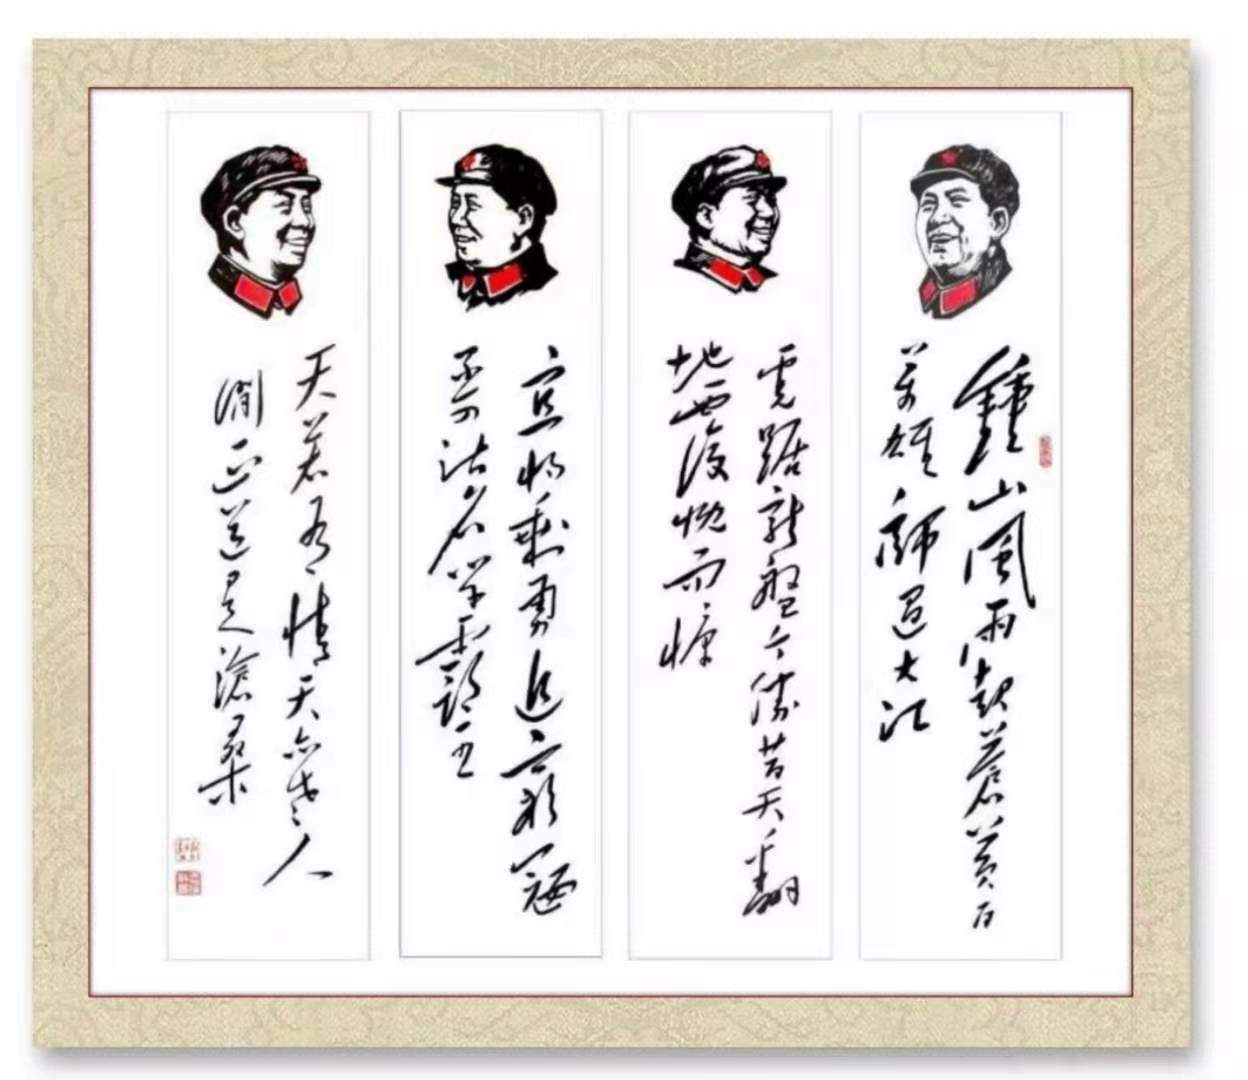 吴景海：文化志愿双创建党一百周年重点推介国礼艺术家